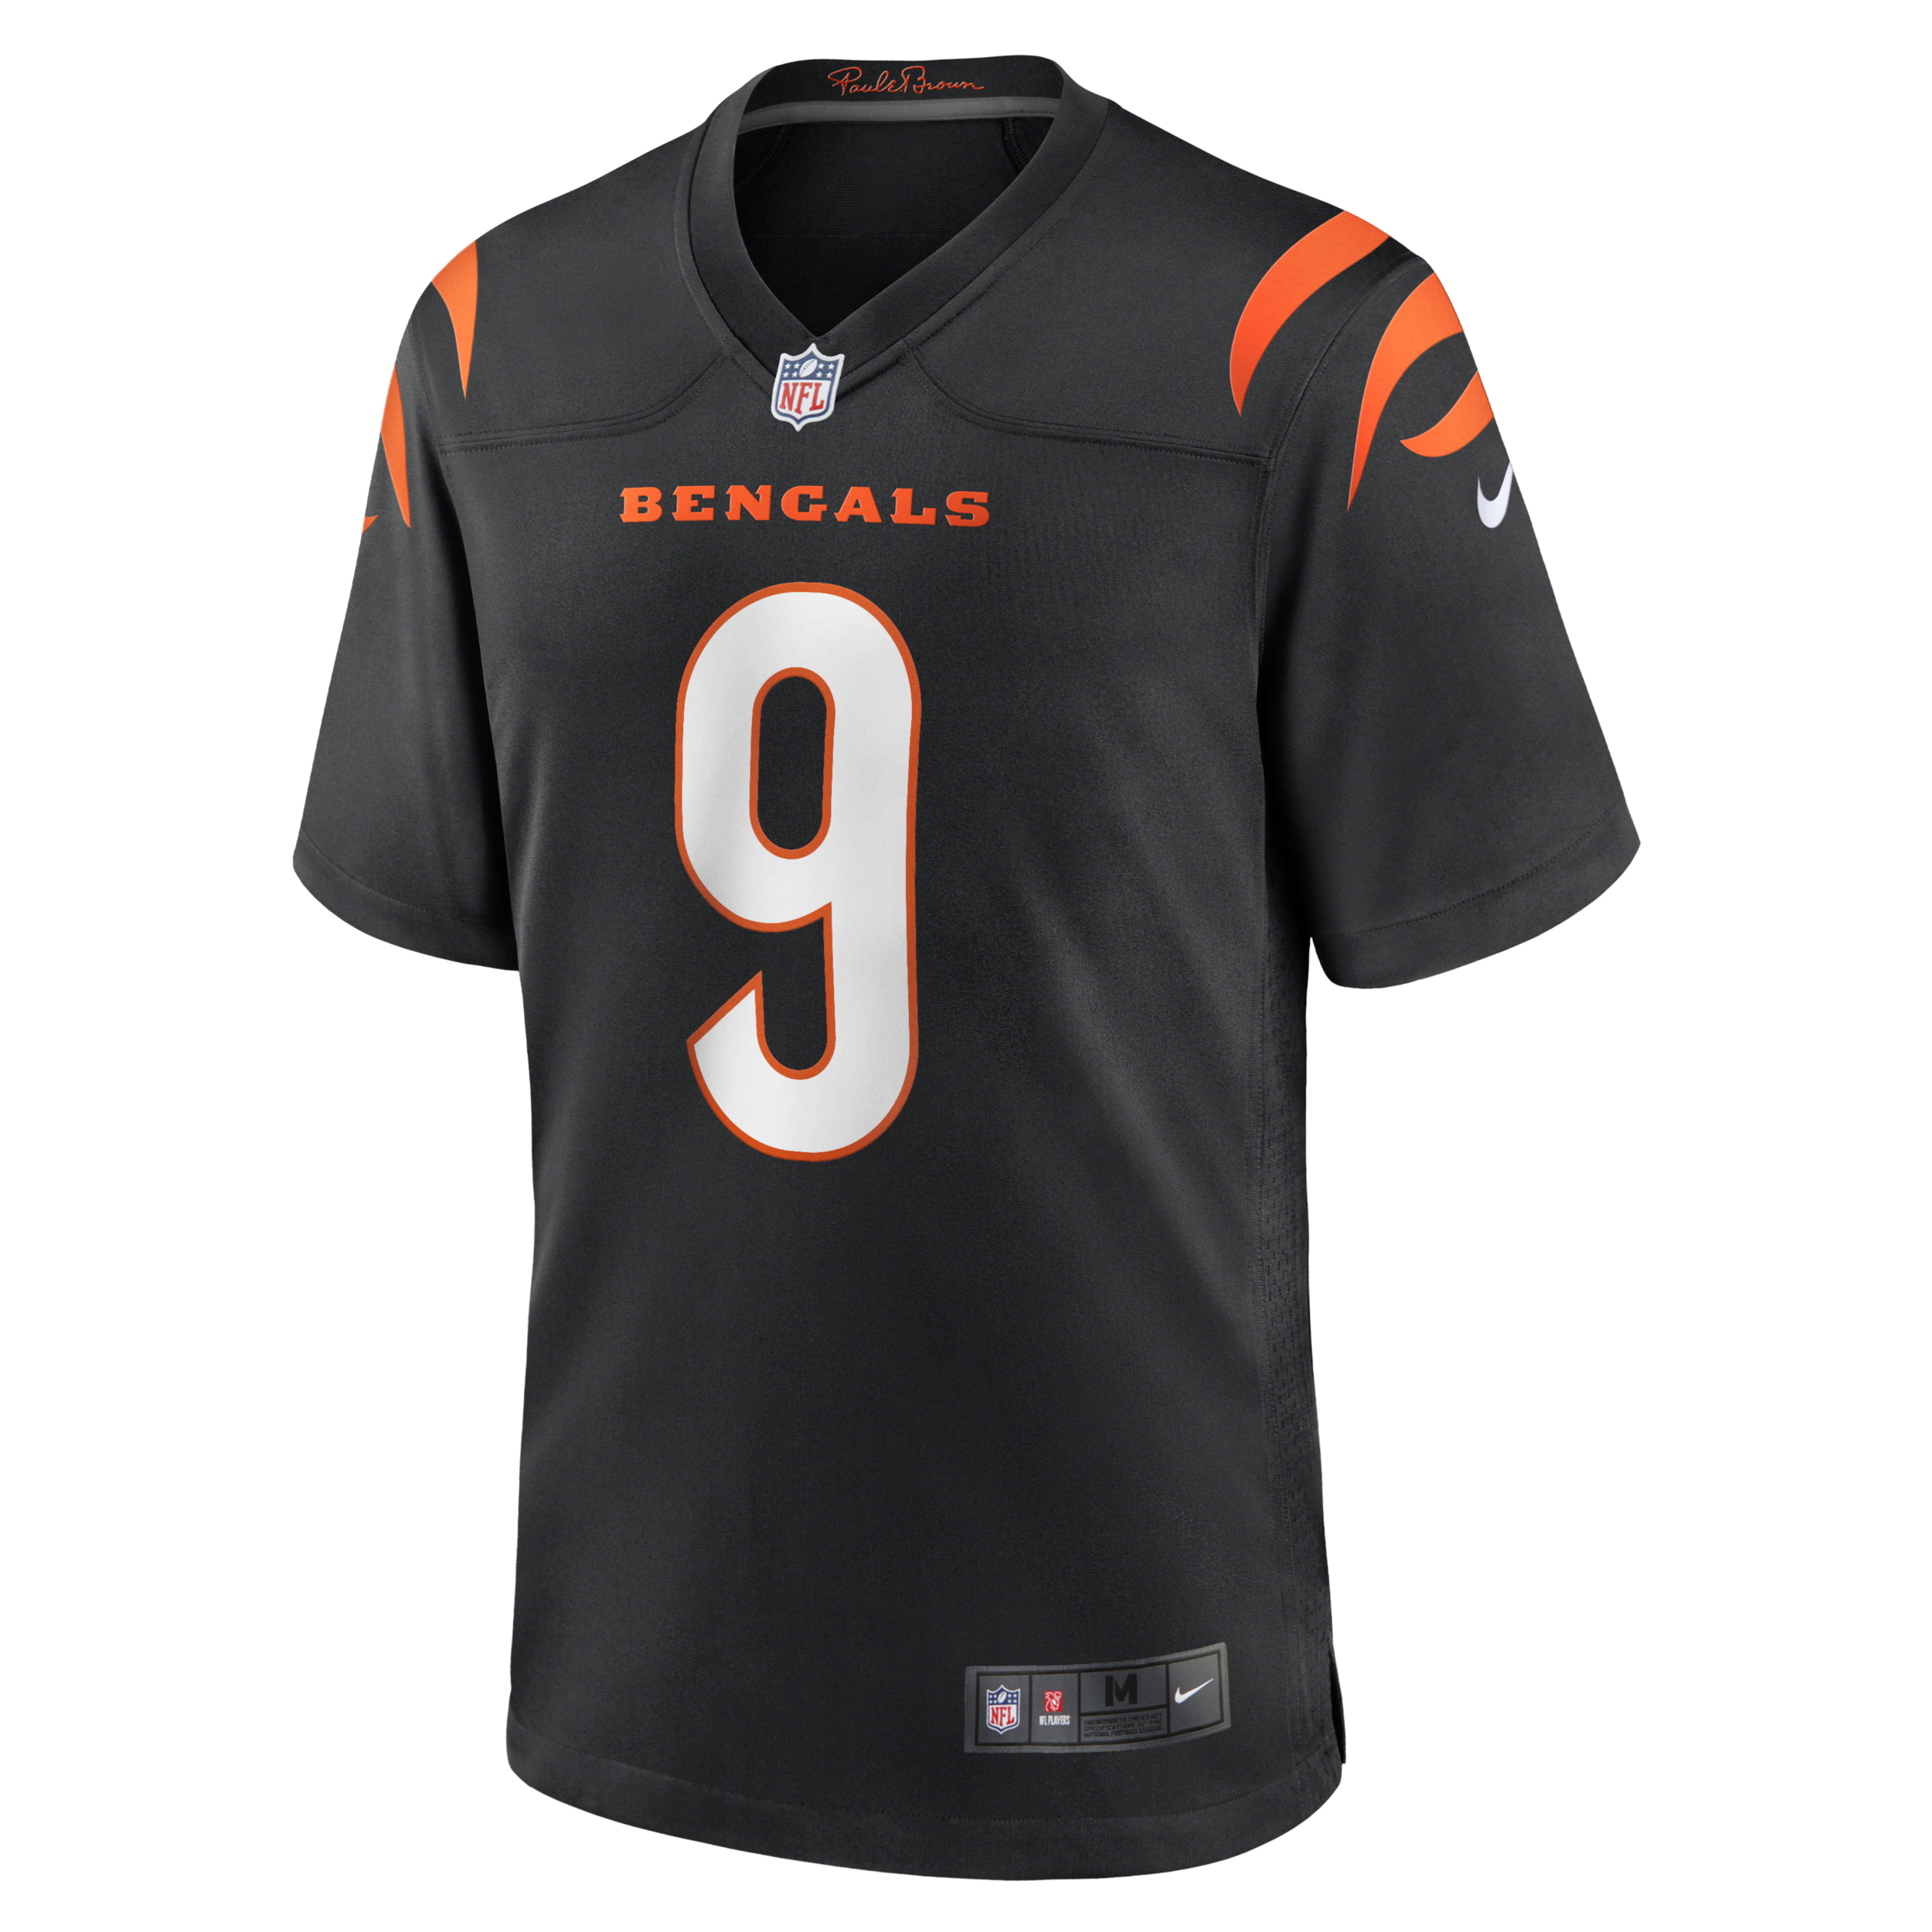 Męska koszulka meczowa do futbolu amerykańskiego NFL Cincinnati Bengals (Joe Burrow) - Czerń